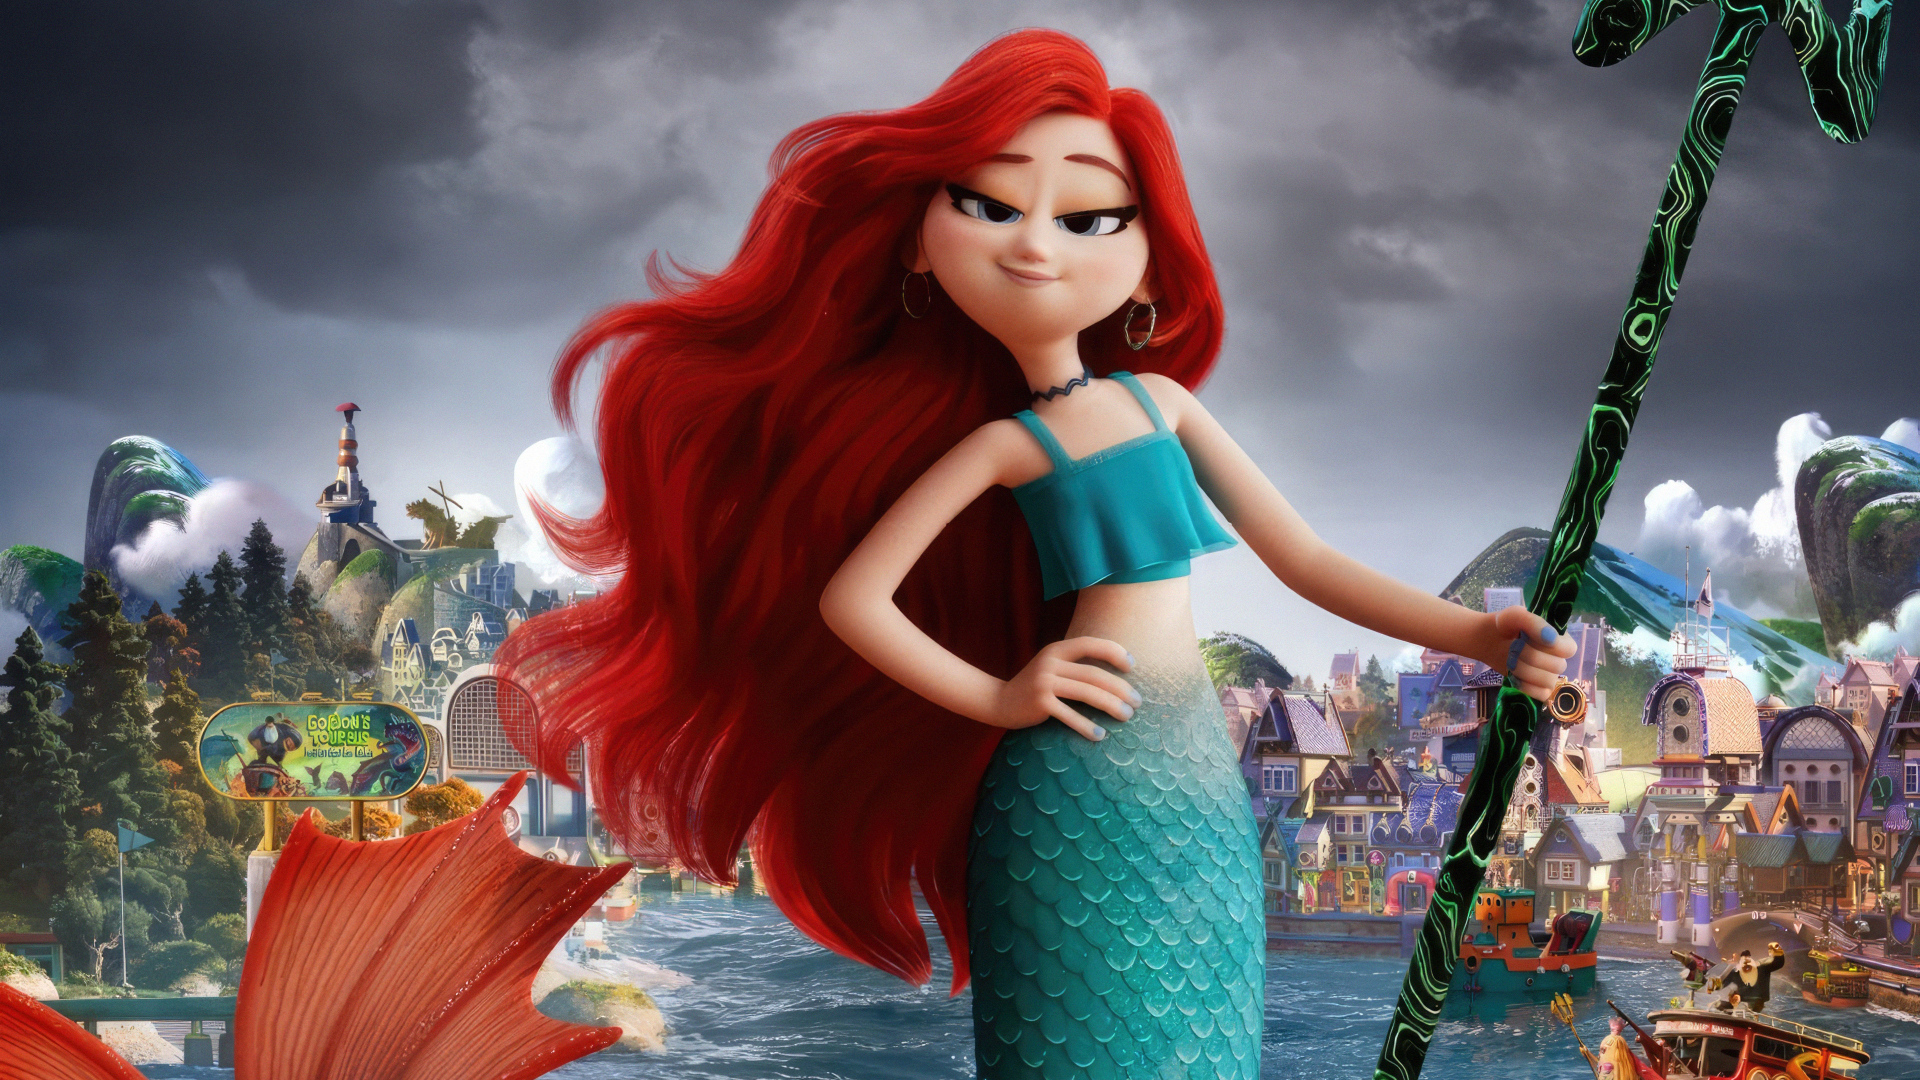 Chelsea the Little Mermaid cartoon character Ruby Gilman: The Adventures of a Teenage Kraken